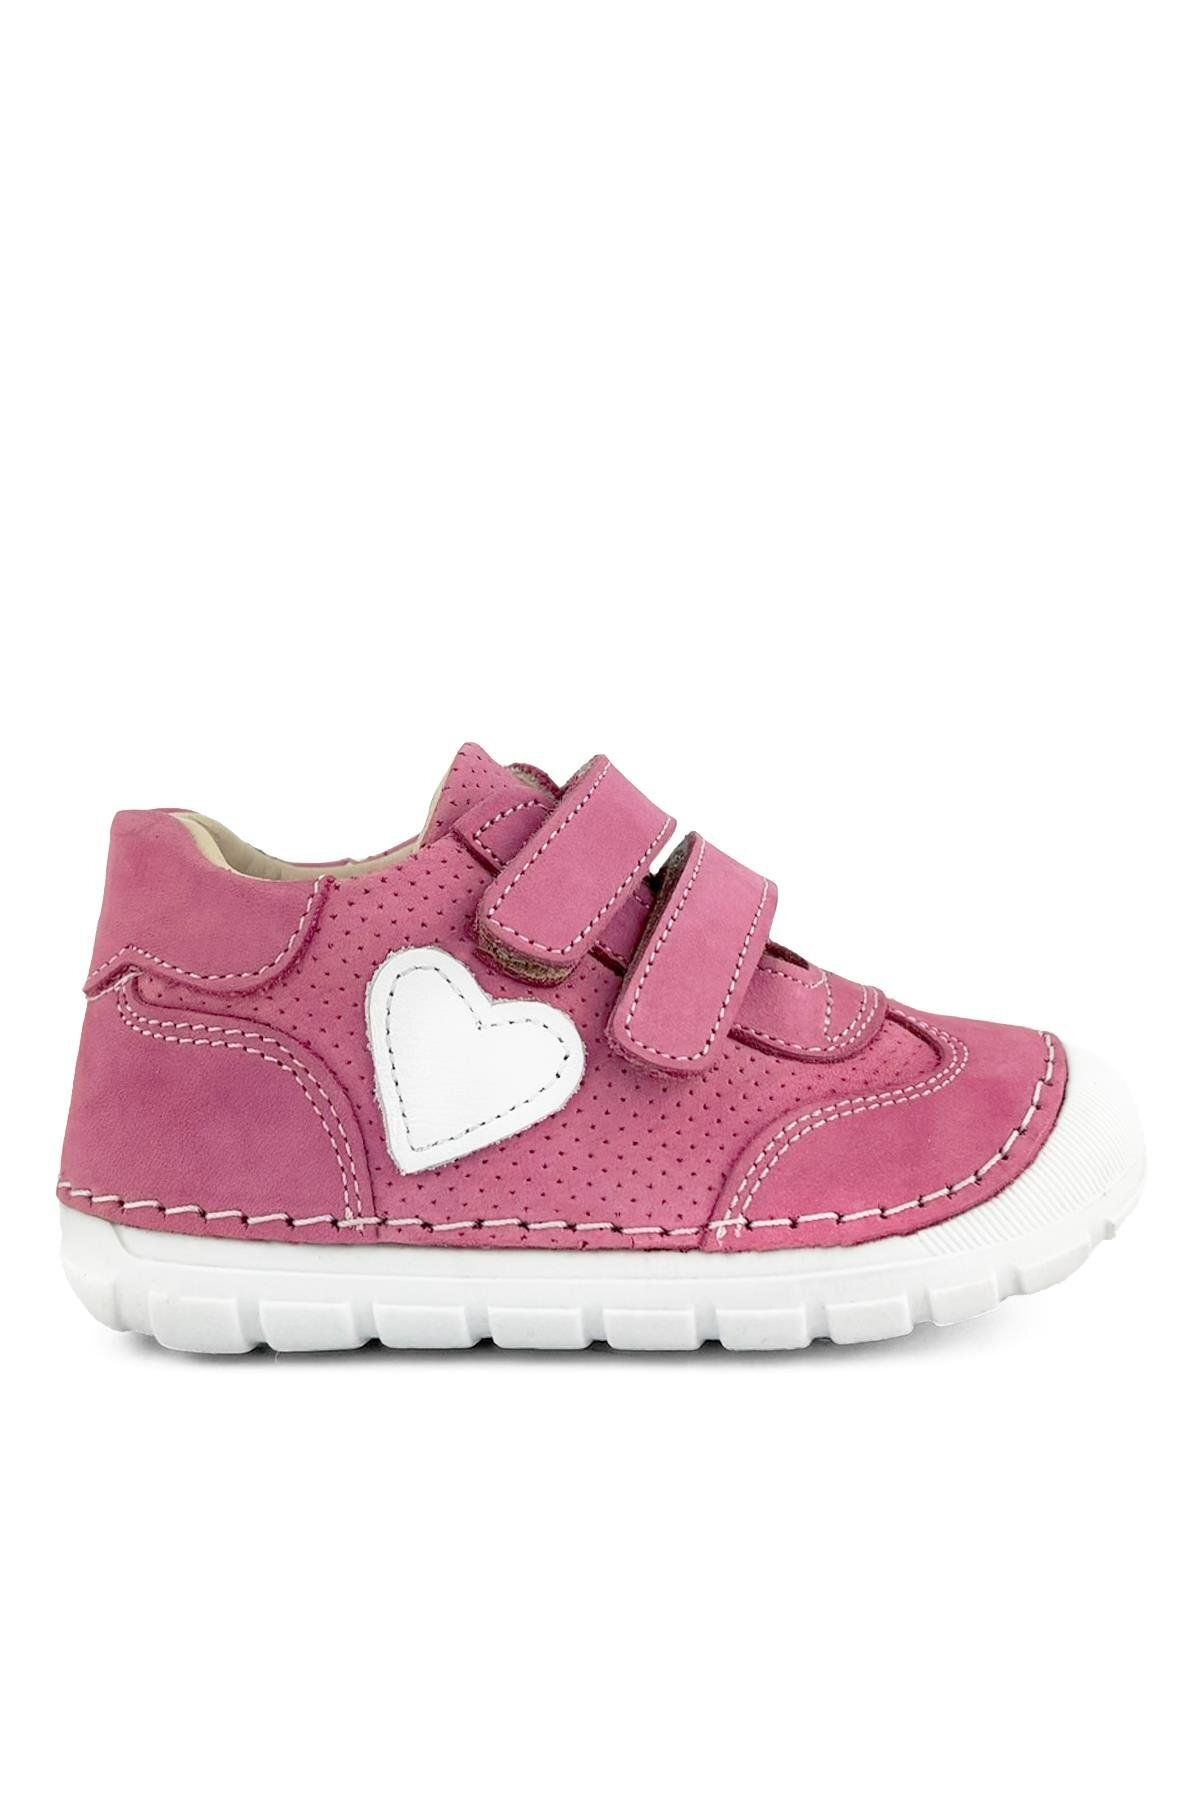 Cici Bebe Ayakkabı Hakiki Deri Pembe Nubuk Kız Bebek İlk Adım Ayakkabısı